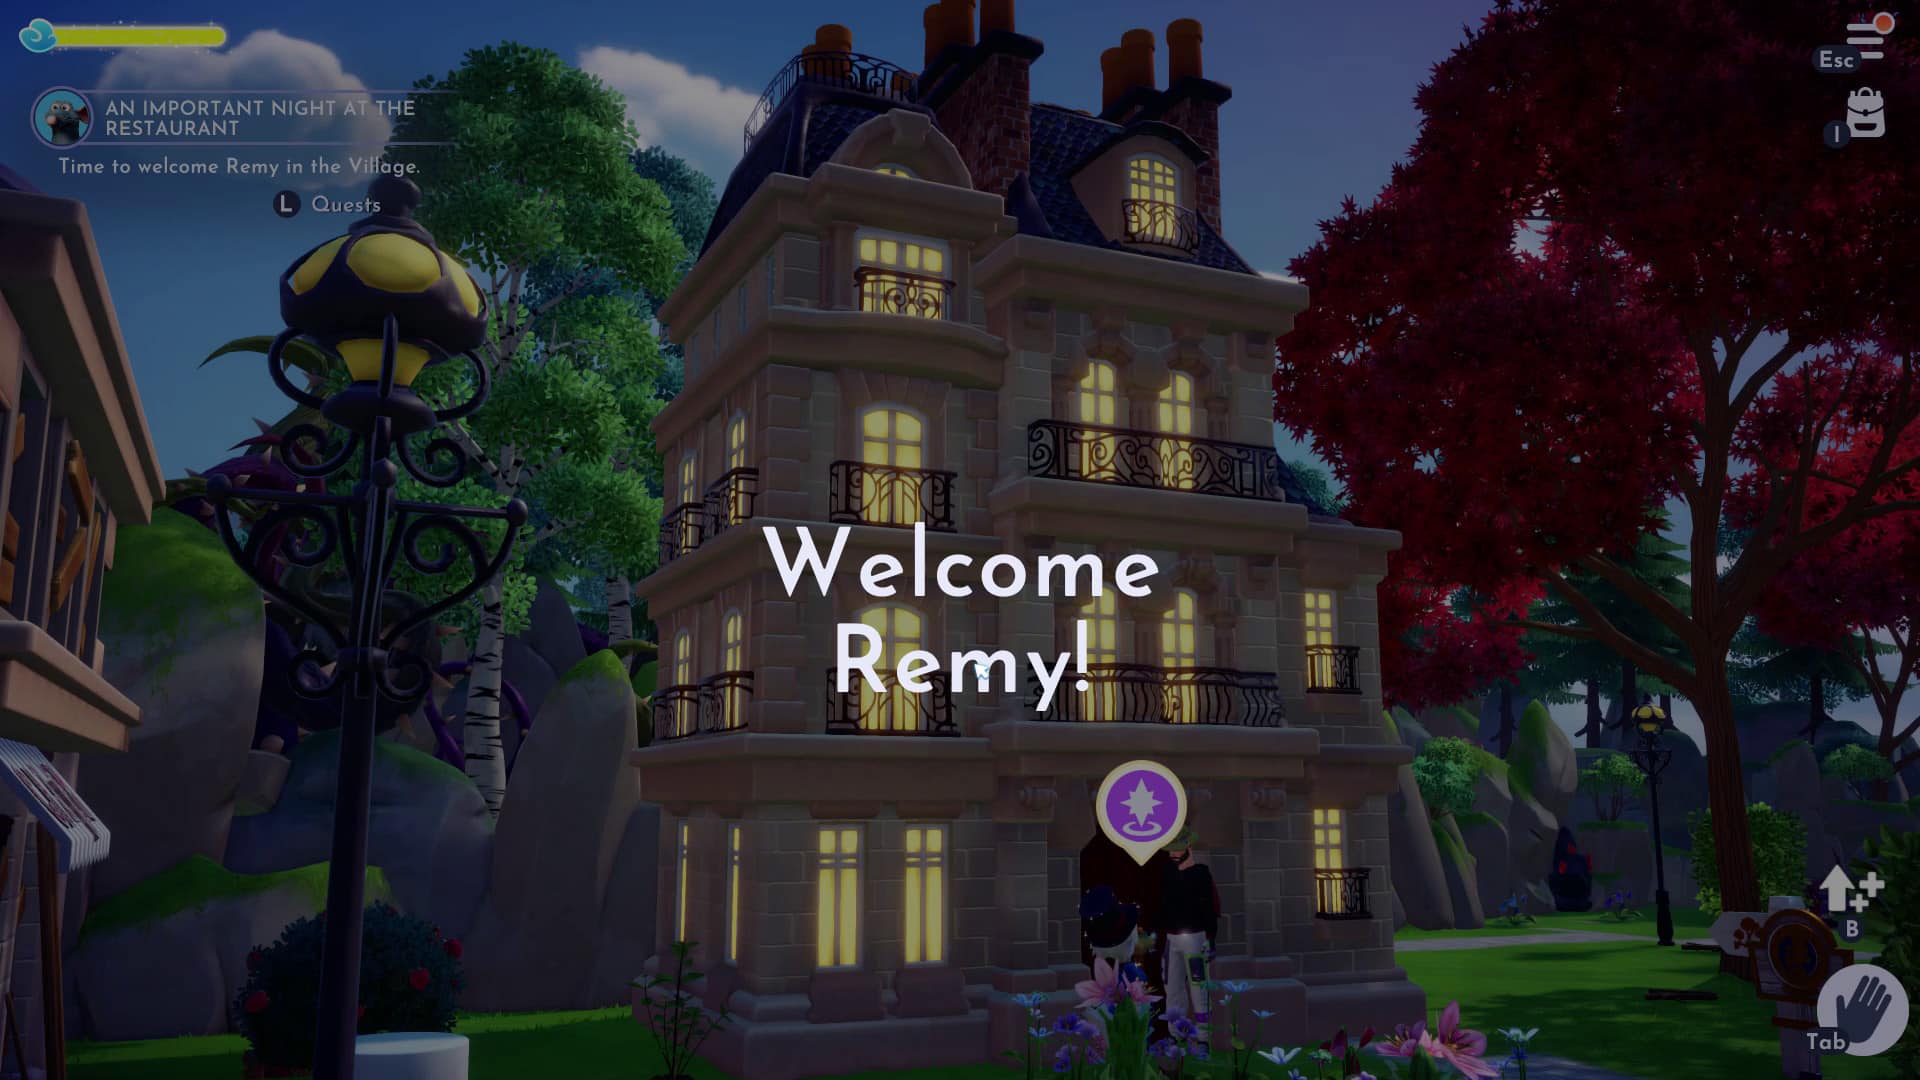 Les personnages de Disney Dreamlight Valley ont construit la maison de Remy